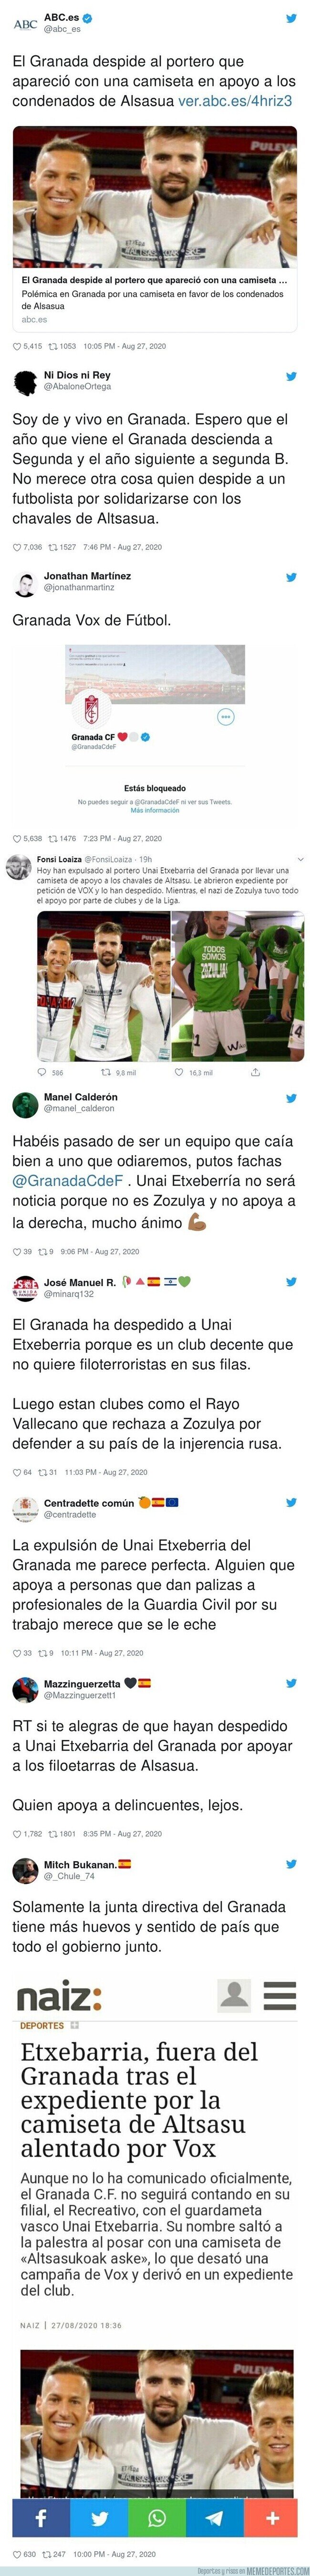 1114509 - Tremenda polémica: el Granada, alentado por VOX, despide a uno de sus futbolistas por motivos políticos y divide a sus aficionados